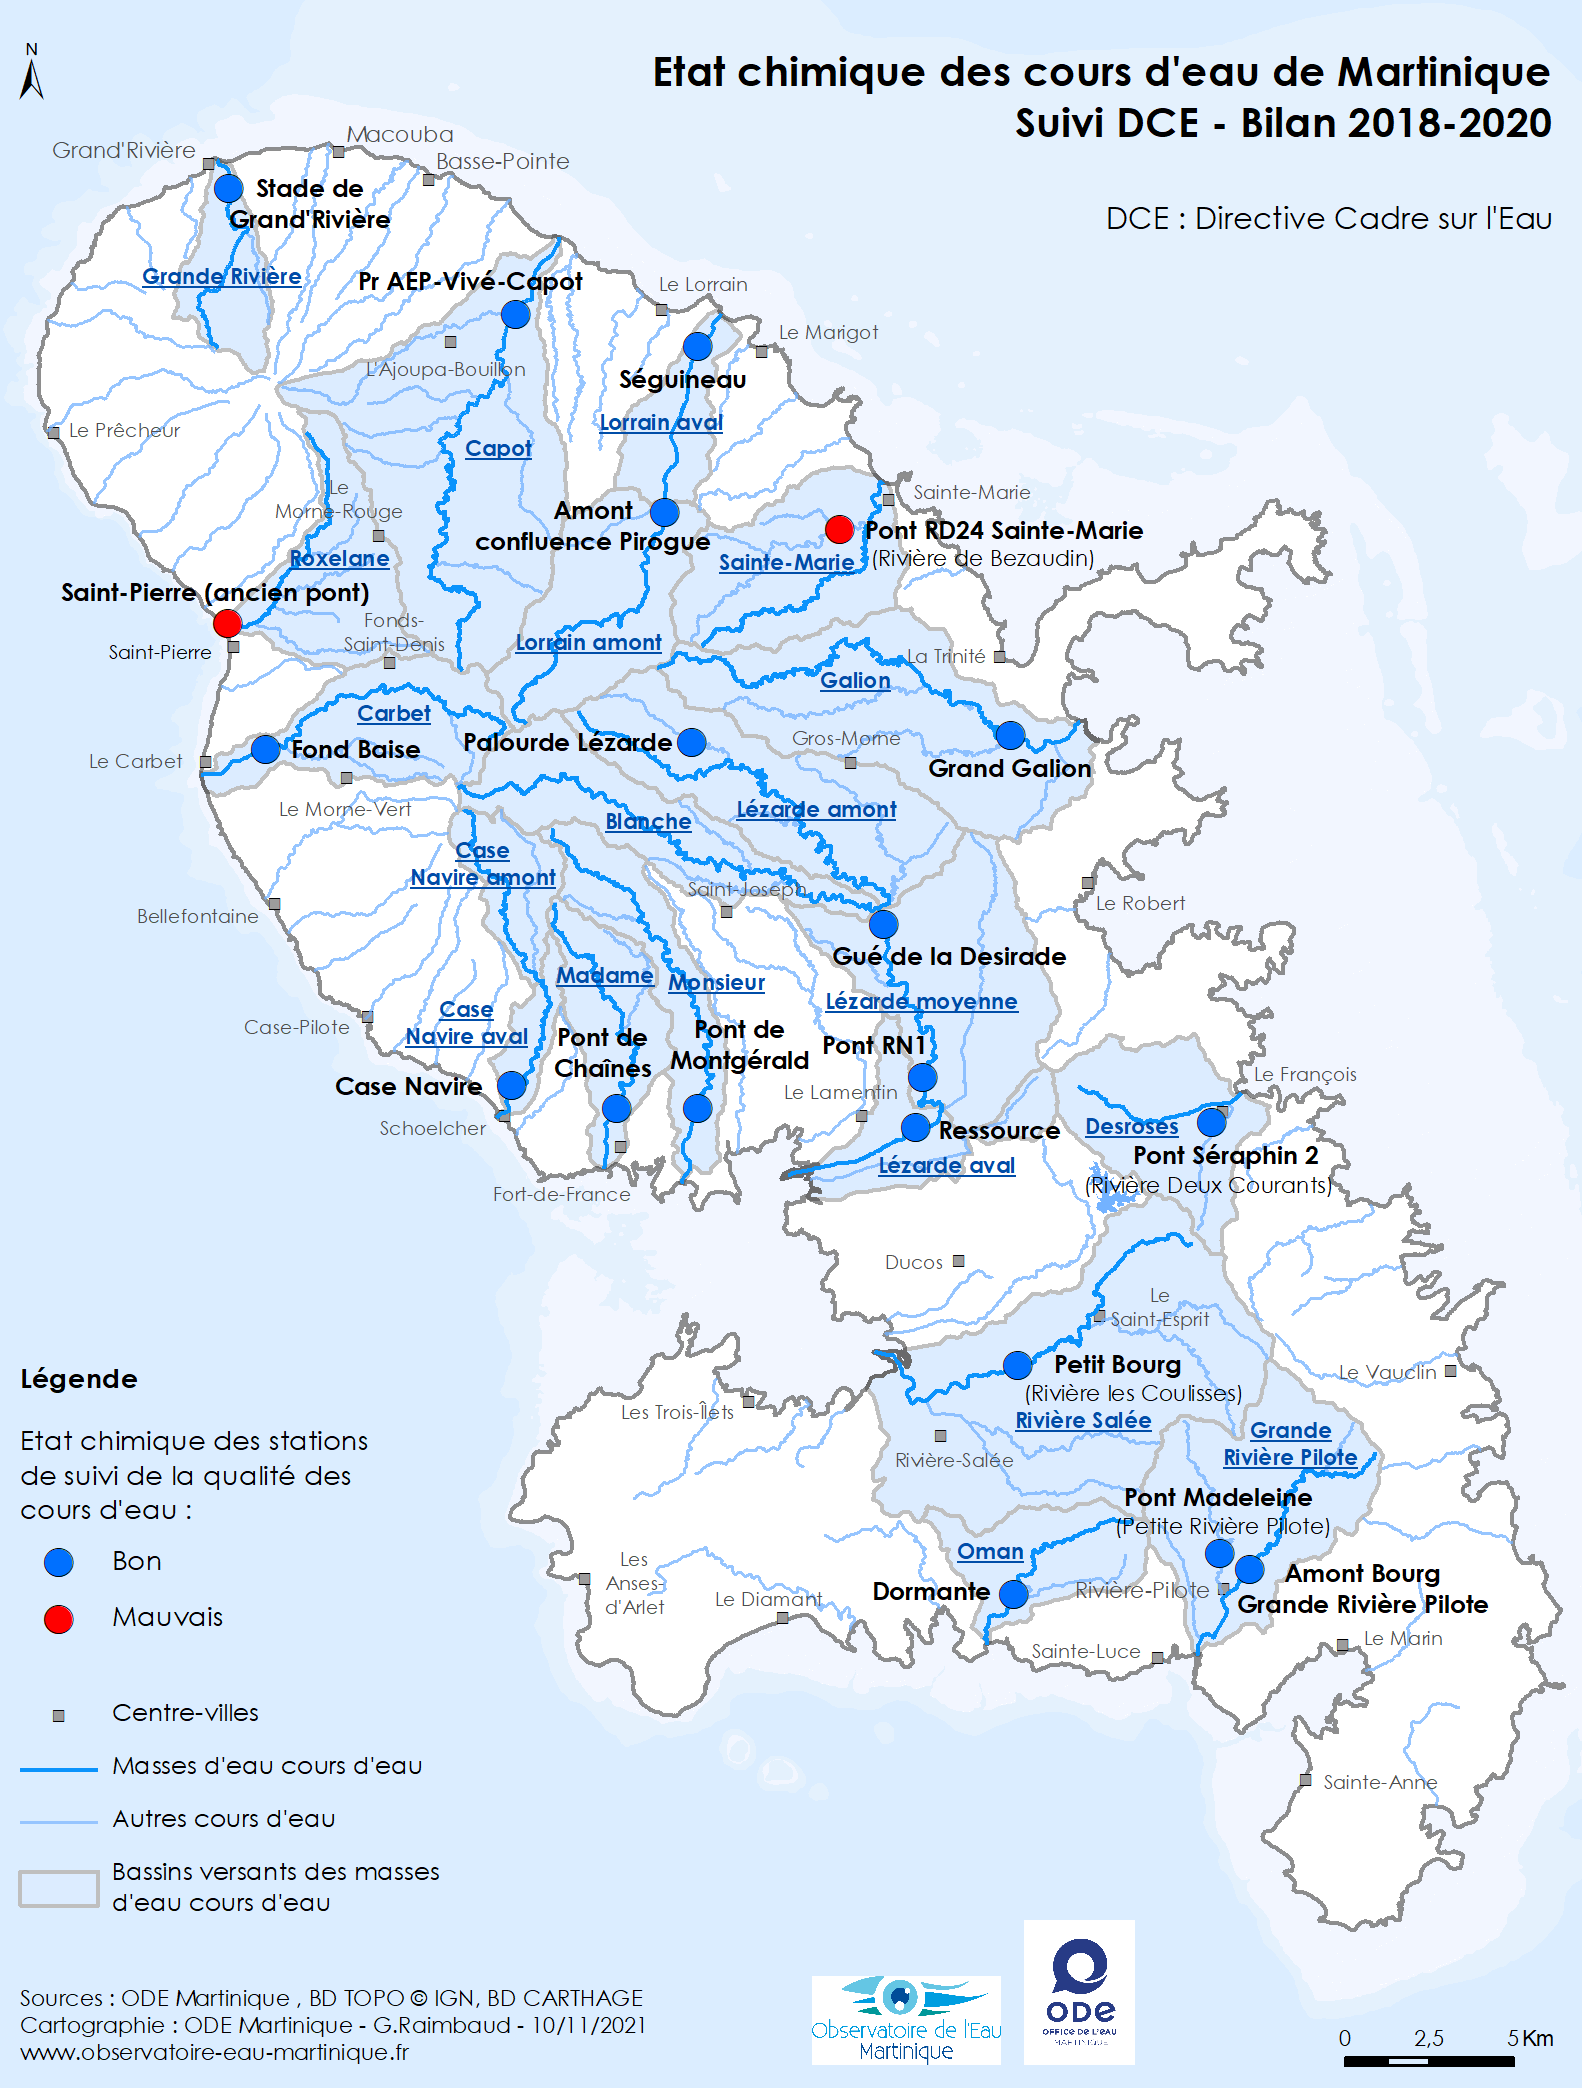 Etat chimique des cours d'eau de Martinique - Suivi DCE - Bilan 2018-2020